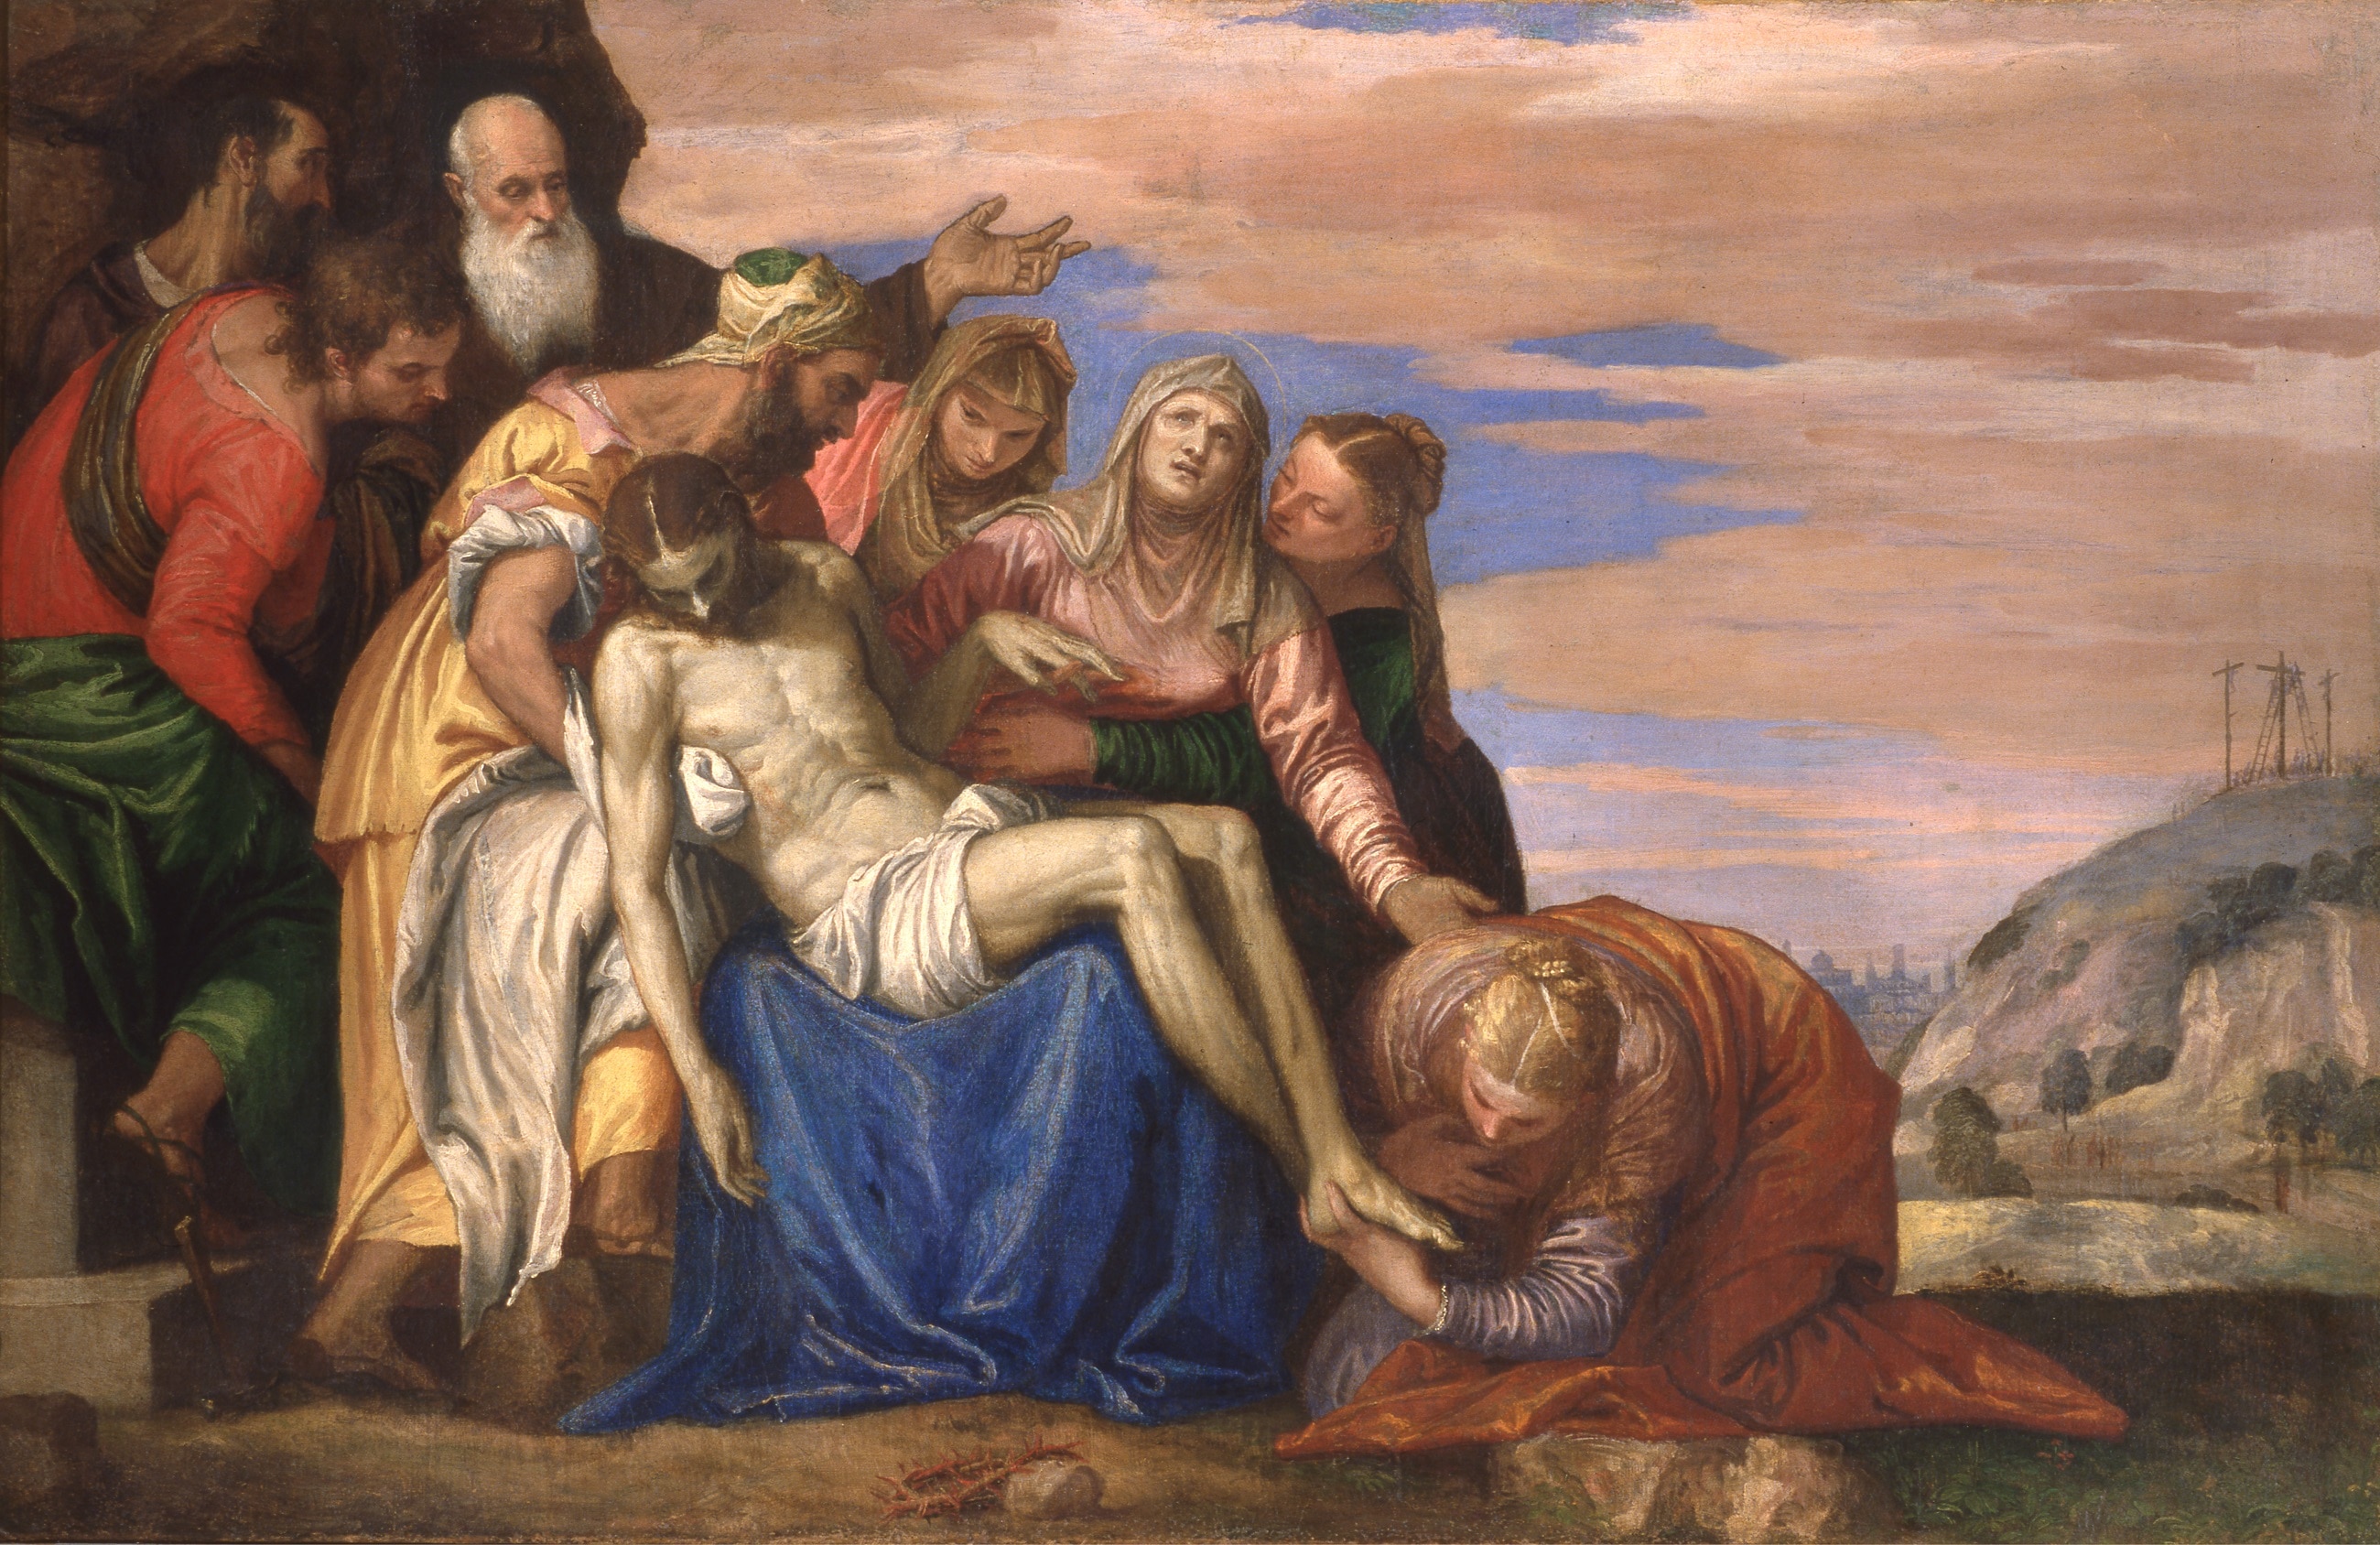 Paolo Caliari detto Paolo Veronese (1528 - 1588), Deposizione di Cristo, 1546-1549 c., Olio su tela, 76x119 cm., Verona, Museo di Castelvecchio